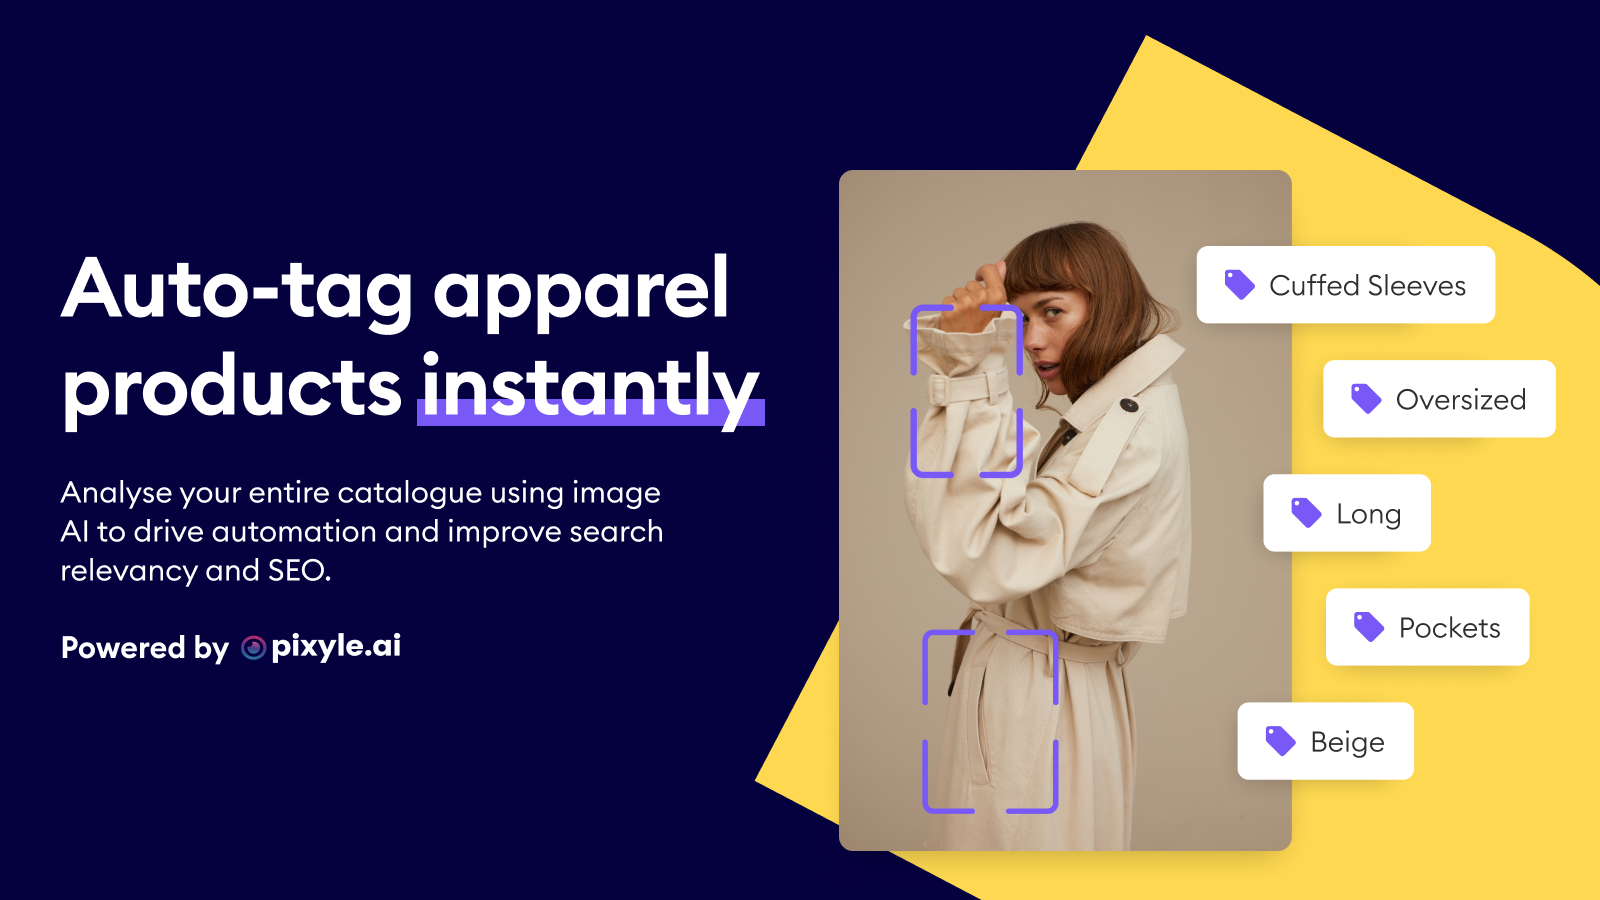 Auto-tag tøjprodukter øjeblikkeligt med Reactify Image AI